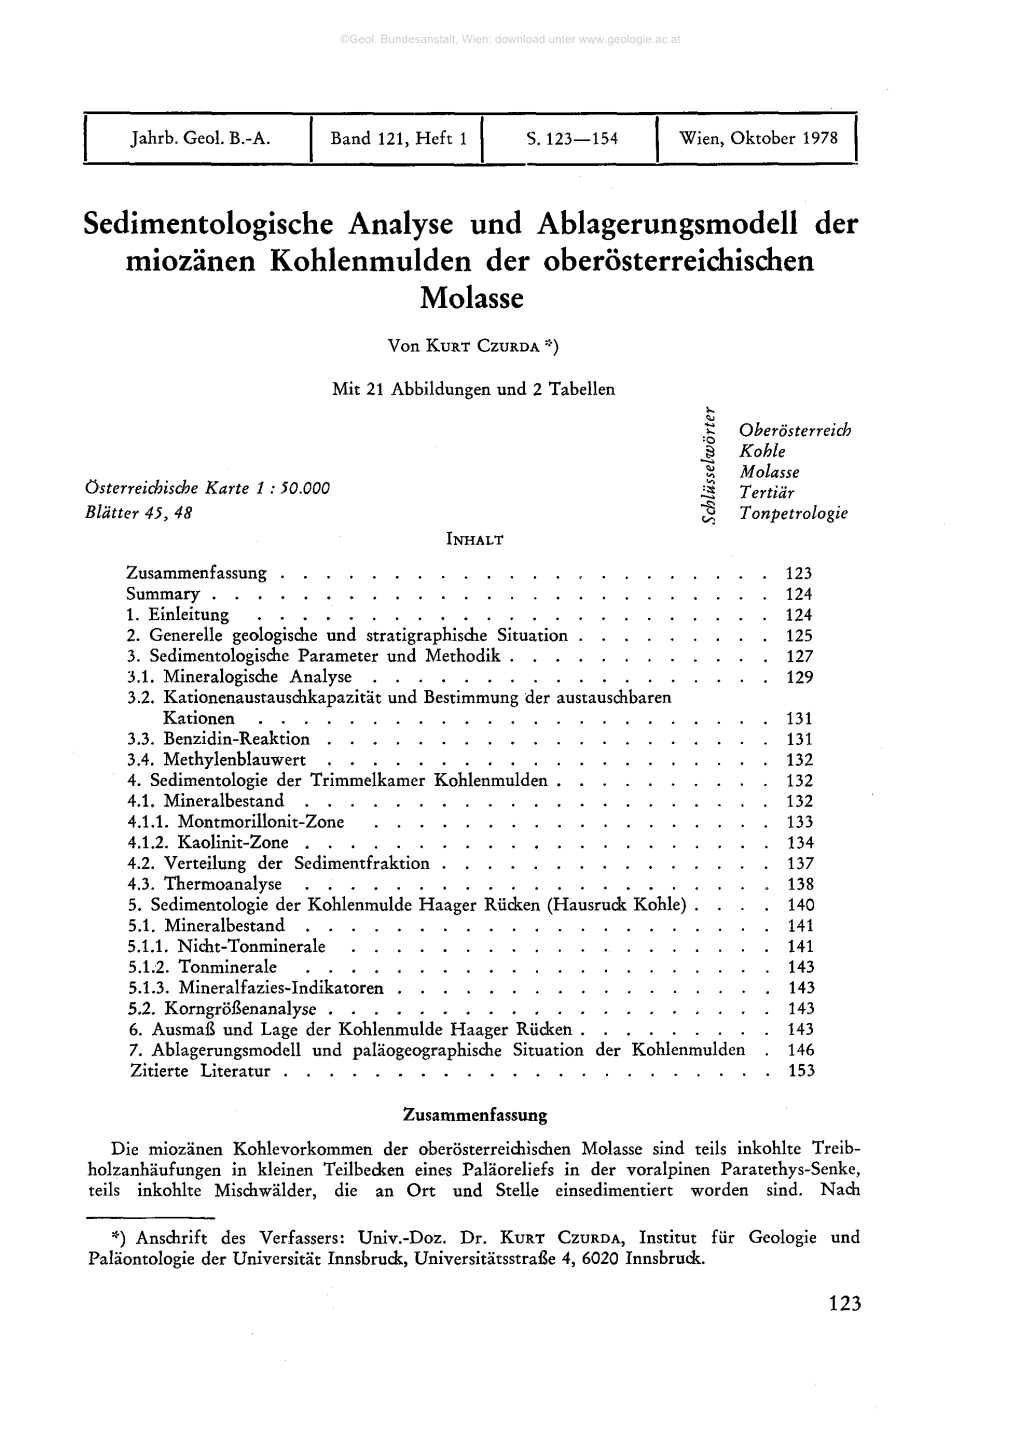 Sedimentologische Analyse Und Ablagerungsmodell Der Miozänen Kohlenmulden Der Oberösterreichischen Molasse